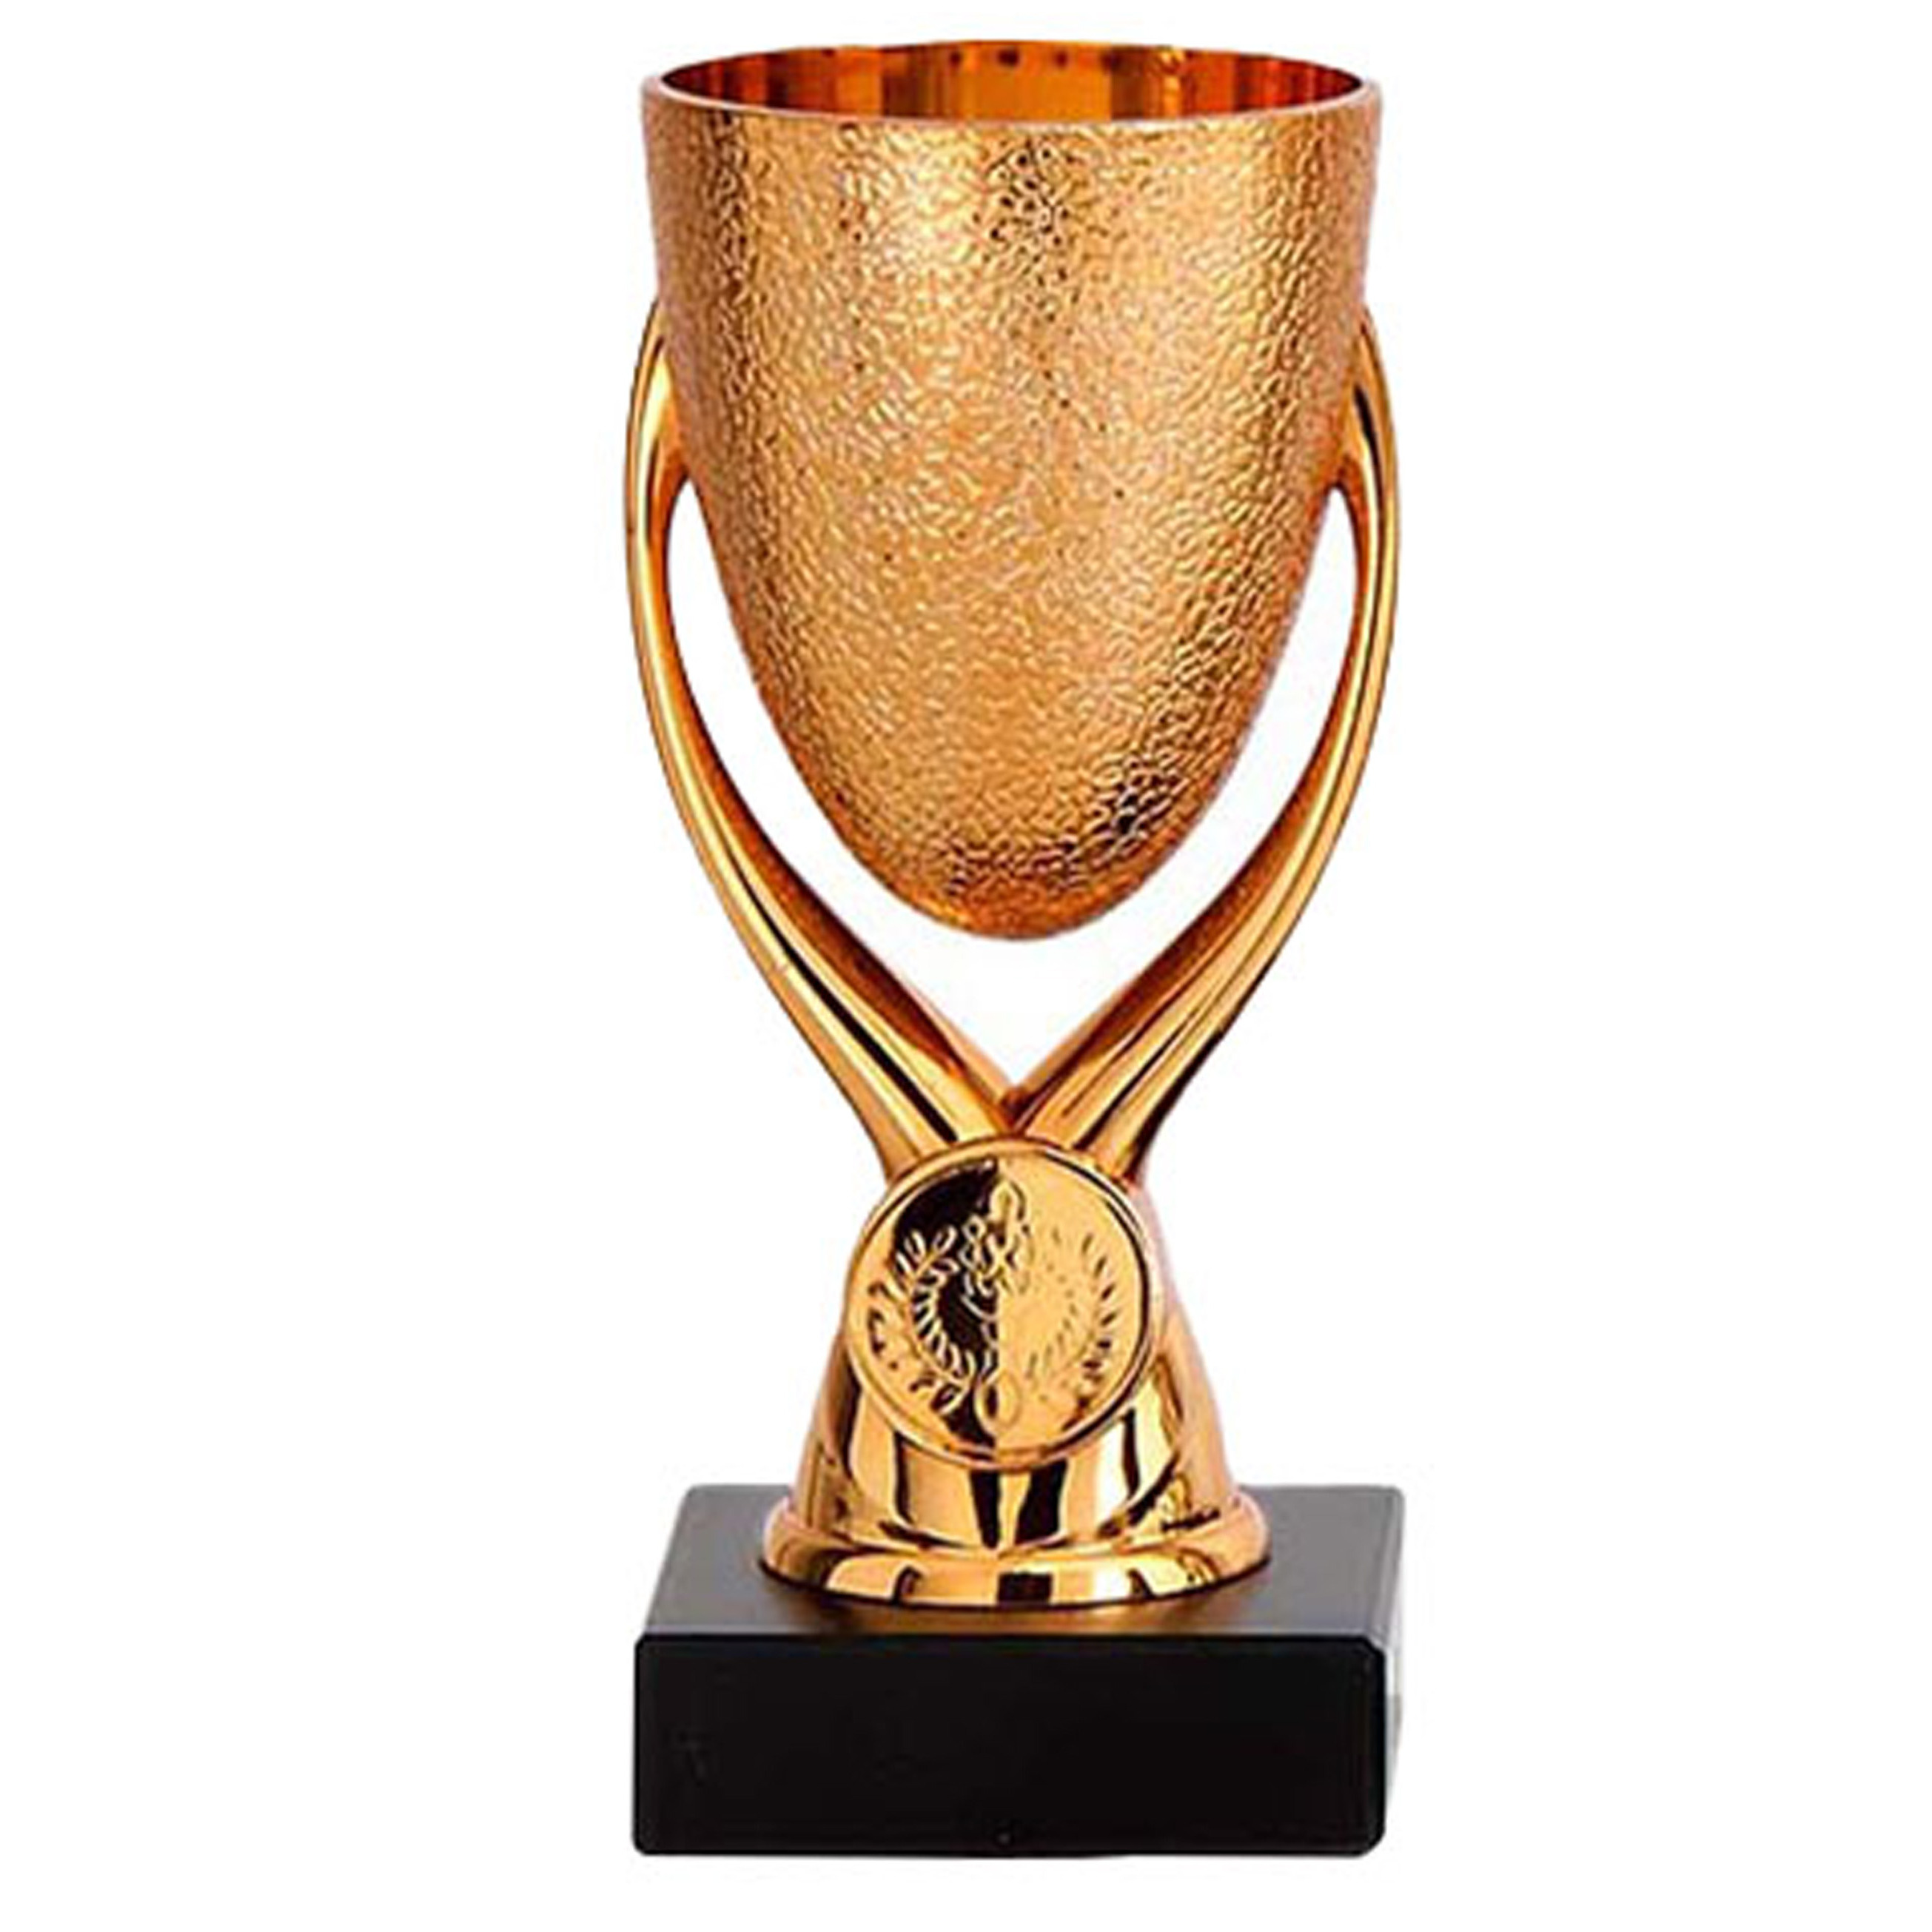 Luxe trofee-prijs beker op sierlijke poot brons kunststof 15 x 6,8 cm